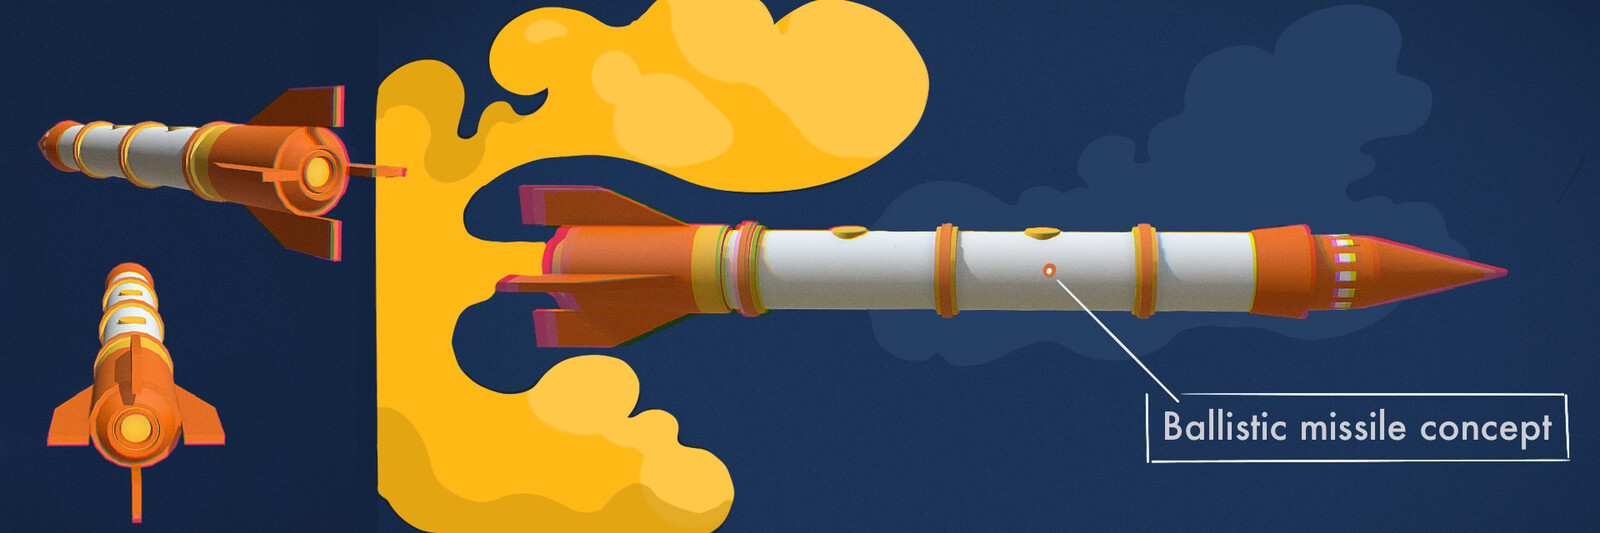 Ballistic missile concept